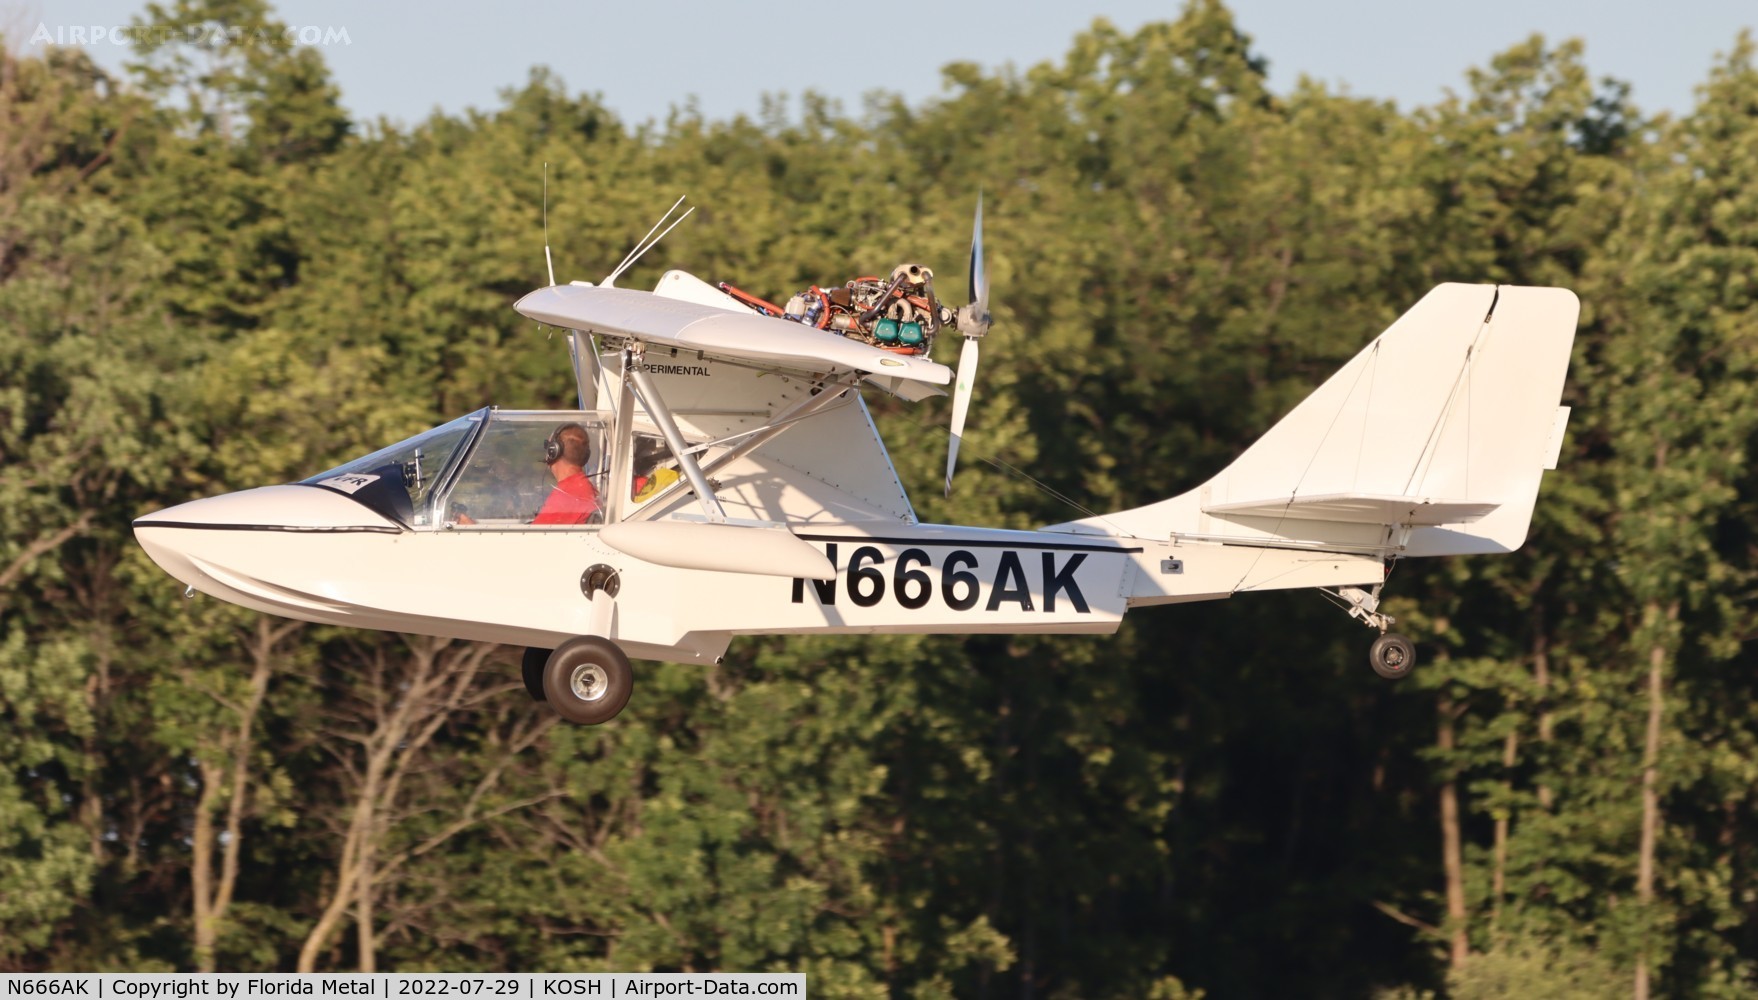 N666AK, 2011 Progressive Aerodyne SeaRey LSX C/N 1LK497C, SeaRey zx